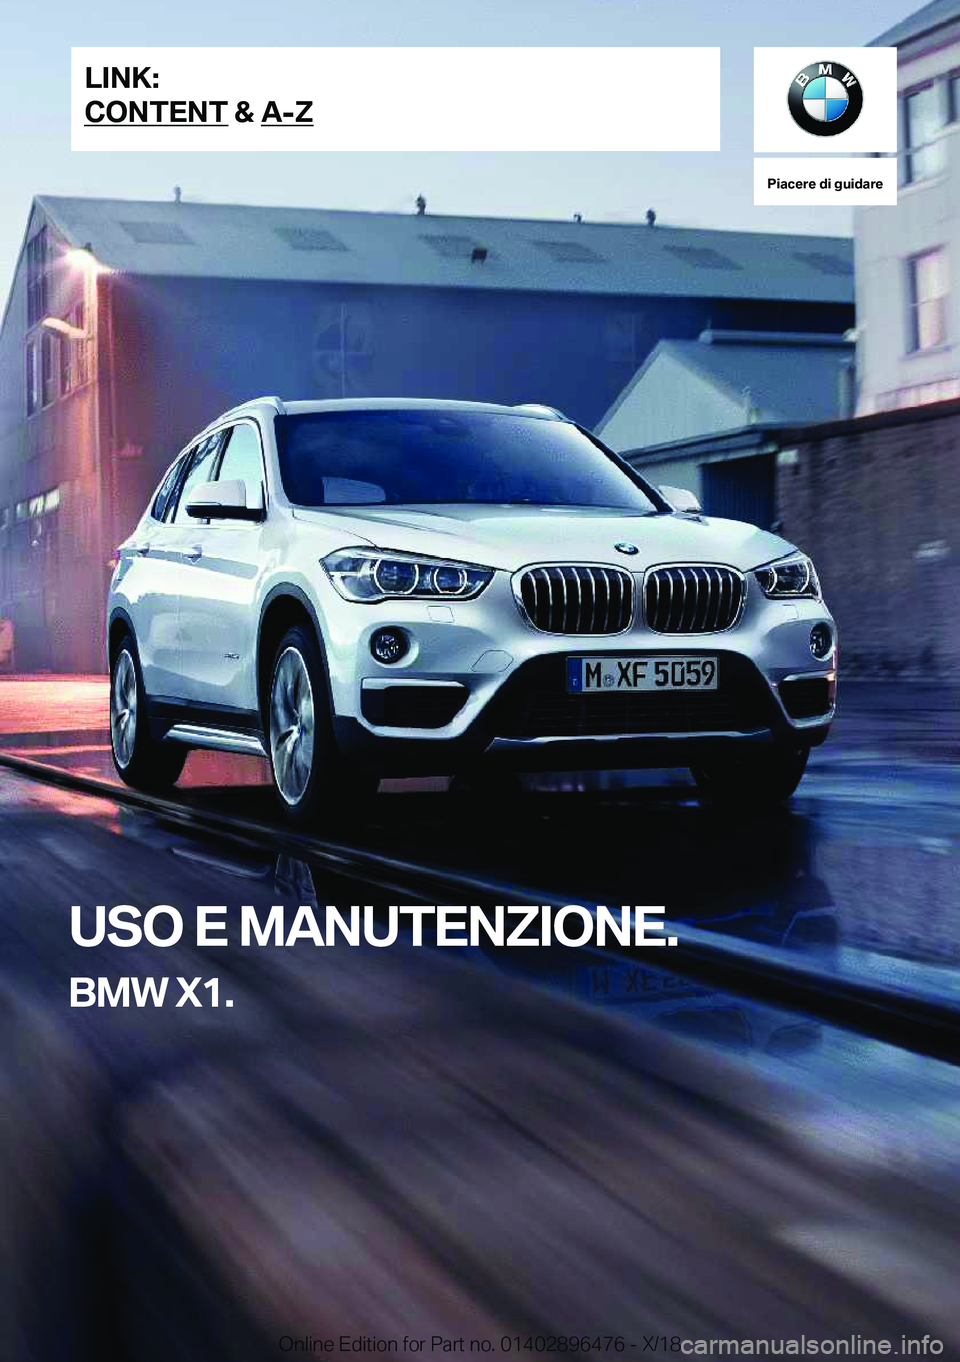 BMW X1 2019  Libretti Di Uso E manutenzione (in Italian) �P�i�a�c�e�r�e��d�i��g�u�i�d�a�r�e
�U�S�O��E��M�A�N�U�T�E�N�Z�I�O�N�E�.
�B�M�W��X�1�.�L�I�N�K�:
�C�O�N�T�E�N�T��&��A�-�Z�O�n�l�i�n�e��E�d�i�t�i�o�n��f�o�r��P�a�r�t��n�o�.��0�1�4�0�2�8�9�6�